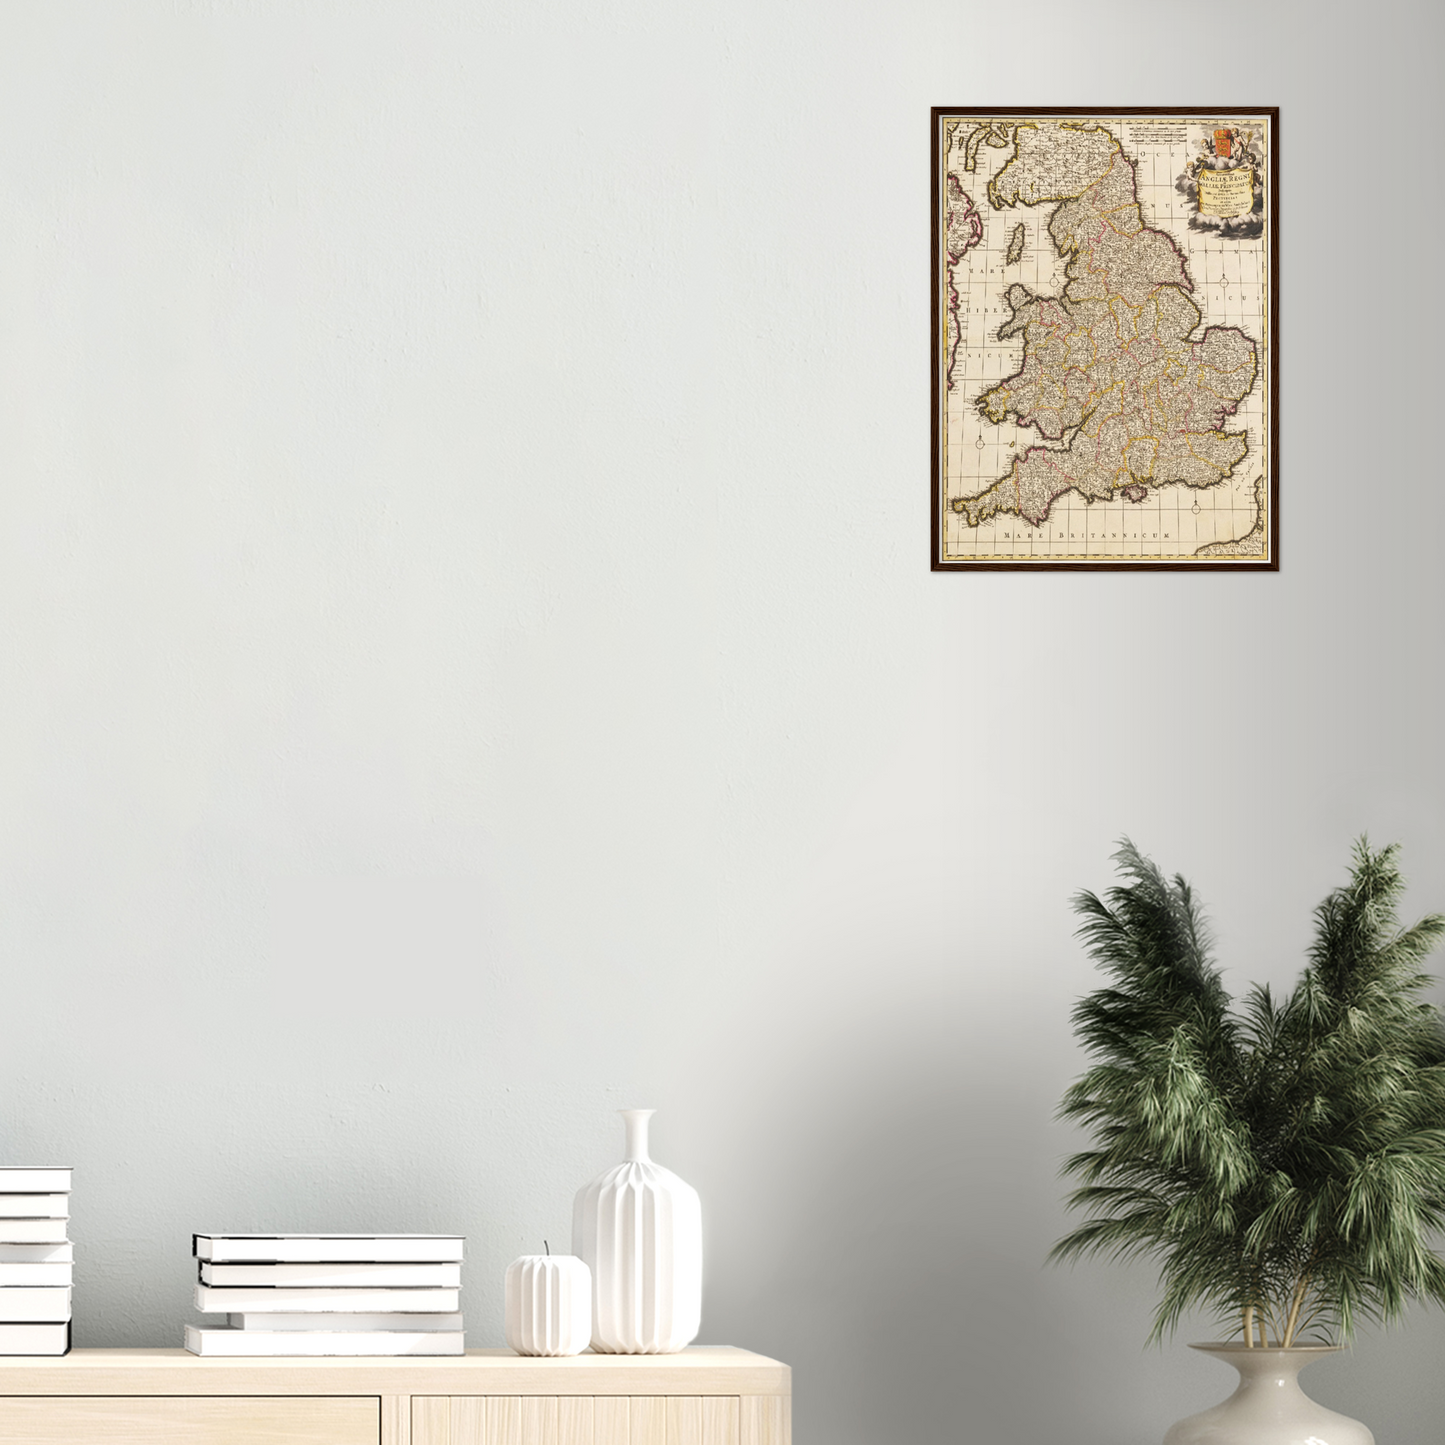 Historische Landkarte England um 1698